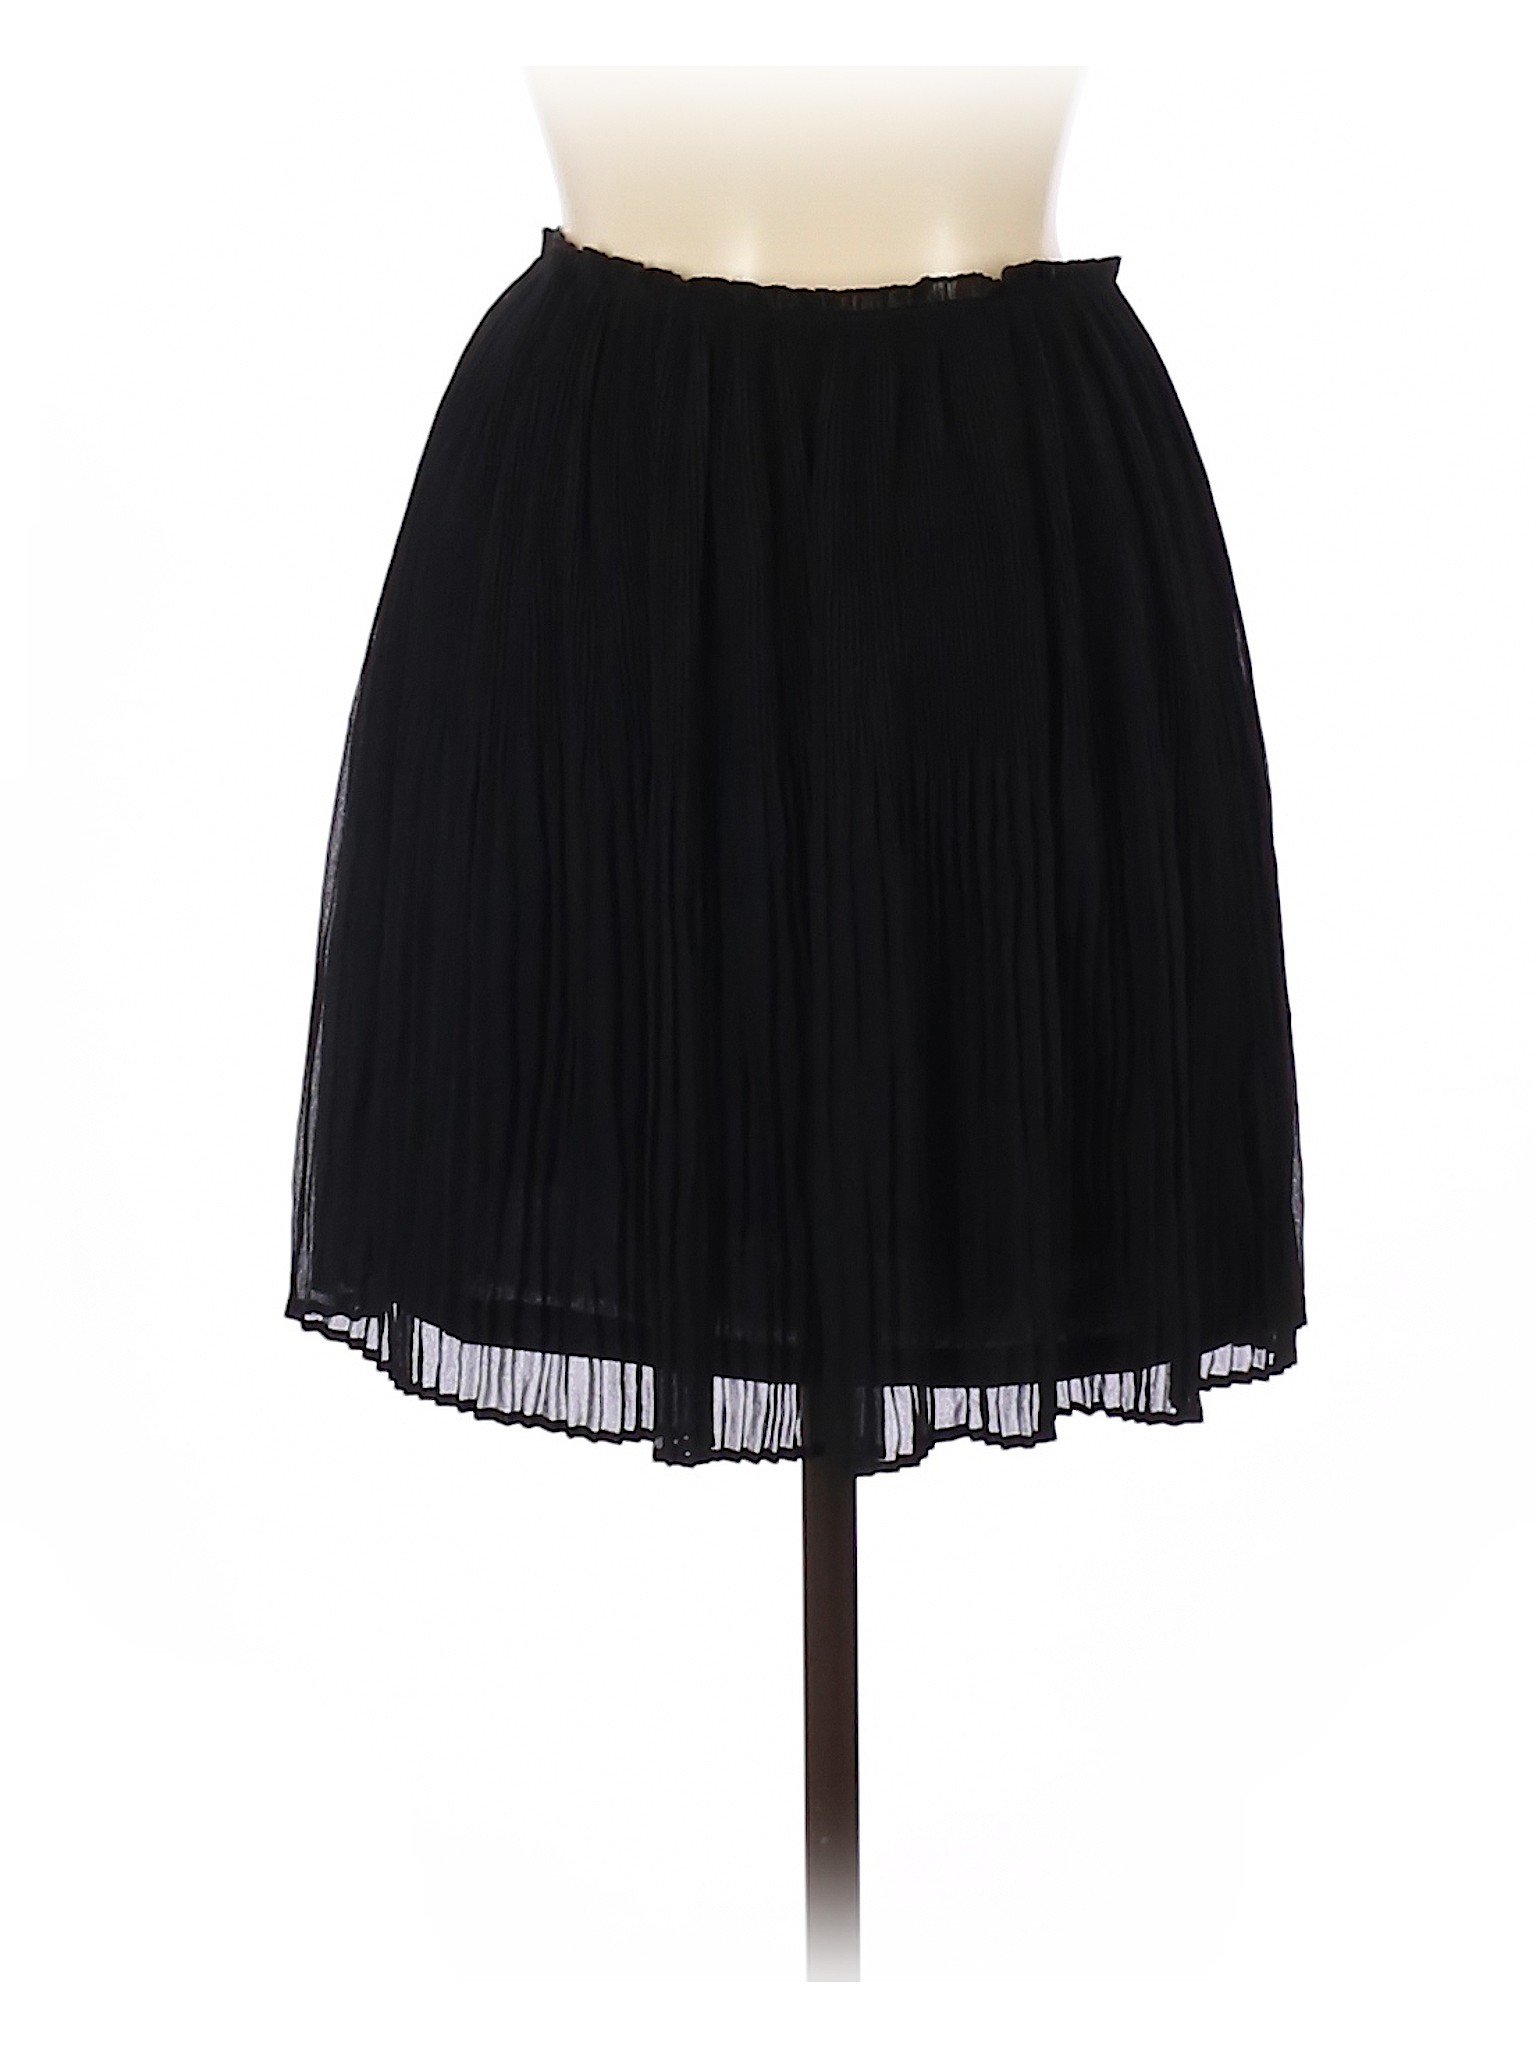 H&M Women Black Casual Skirt 6 | eBay